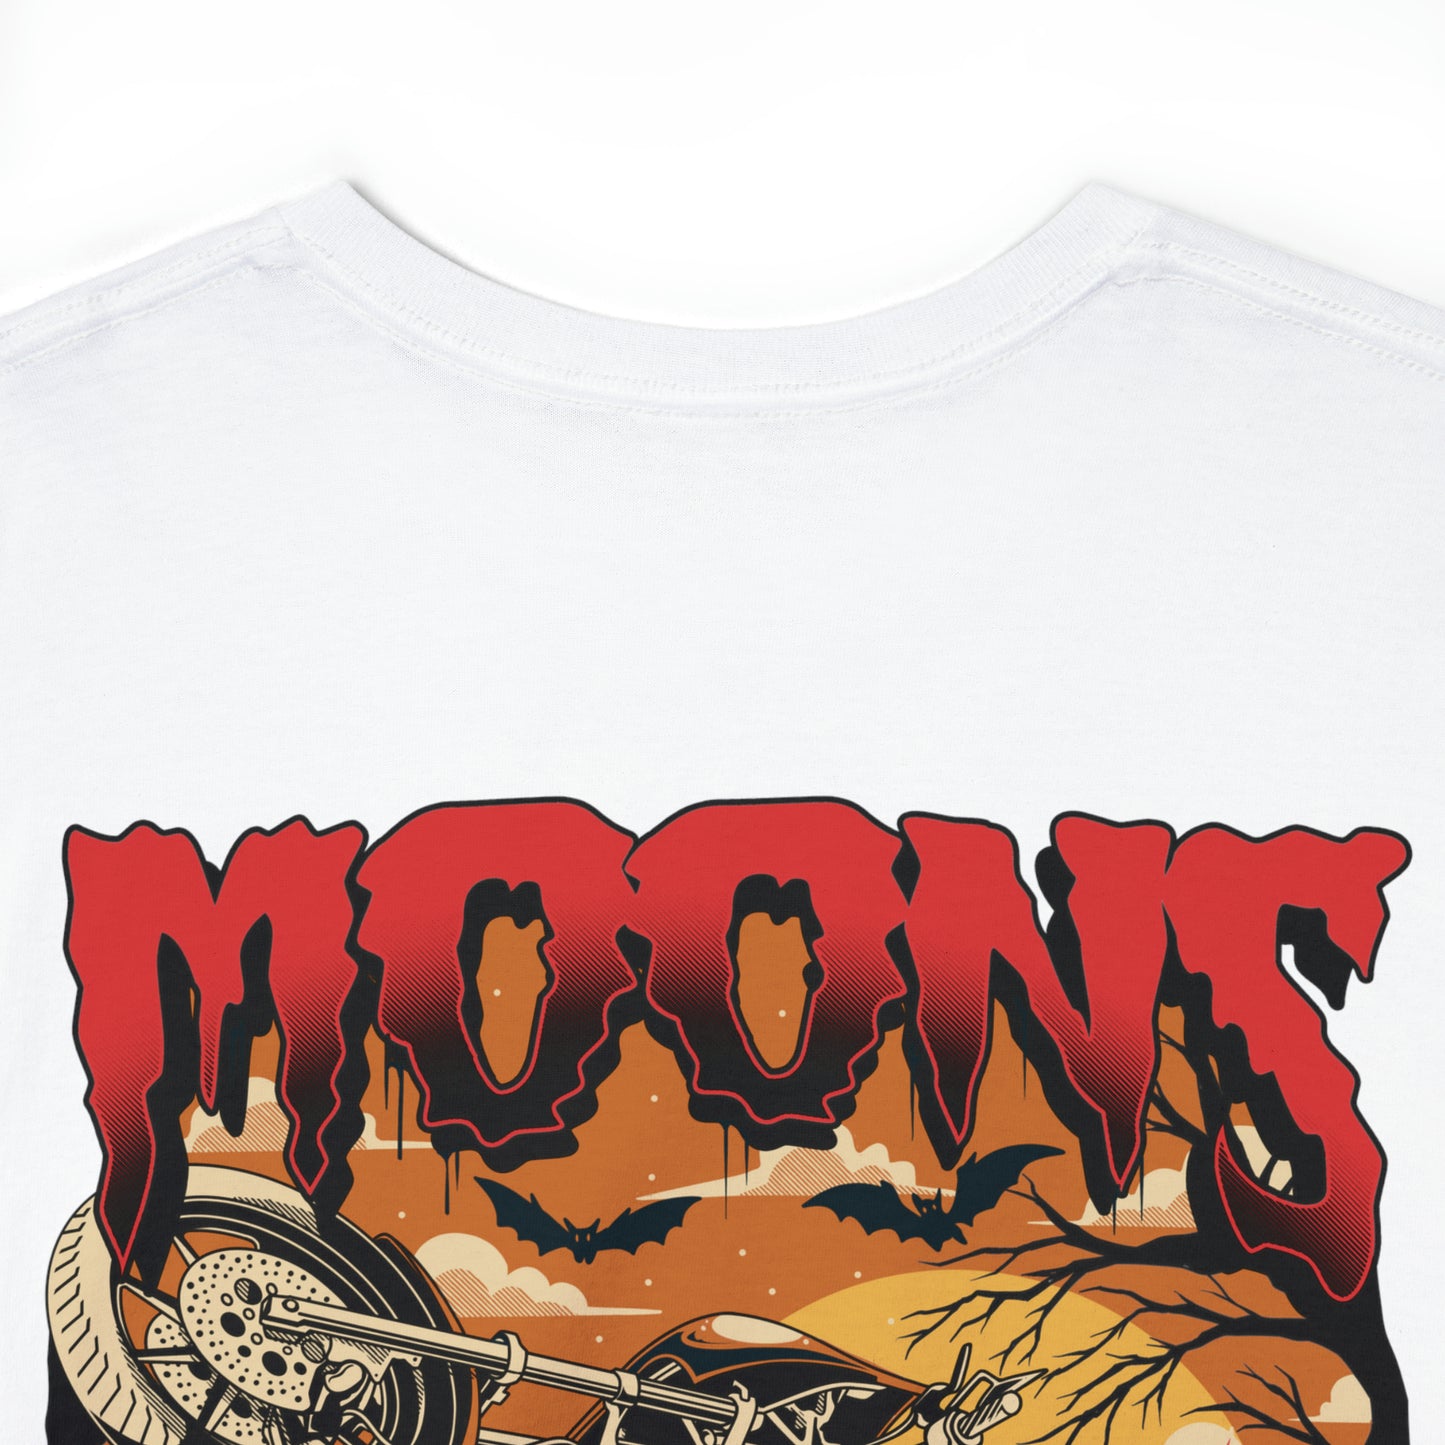 MOONSMC® FXR Headless Horsemen Graveyard Wheelie T-Shirt Red